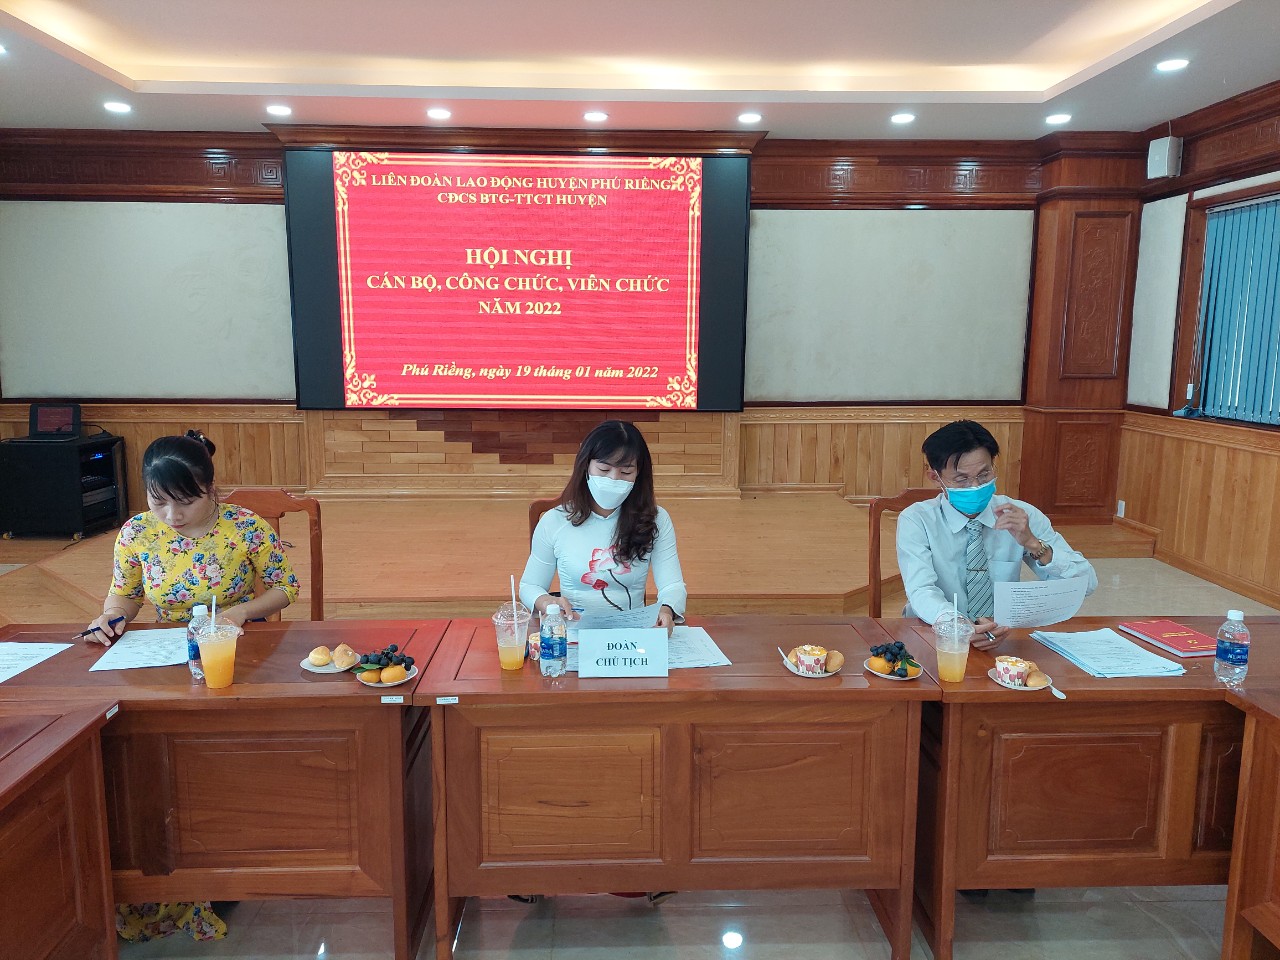 Hội nghị cán bộ, công chức, viên chức Ban Tuyên giáo – Trung tâm Chính trị huyện Phú Riềng năm 2022